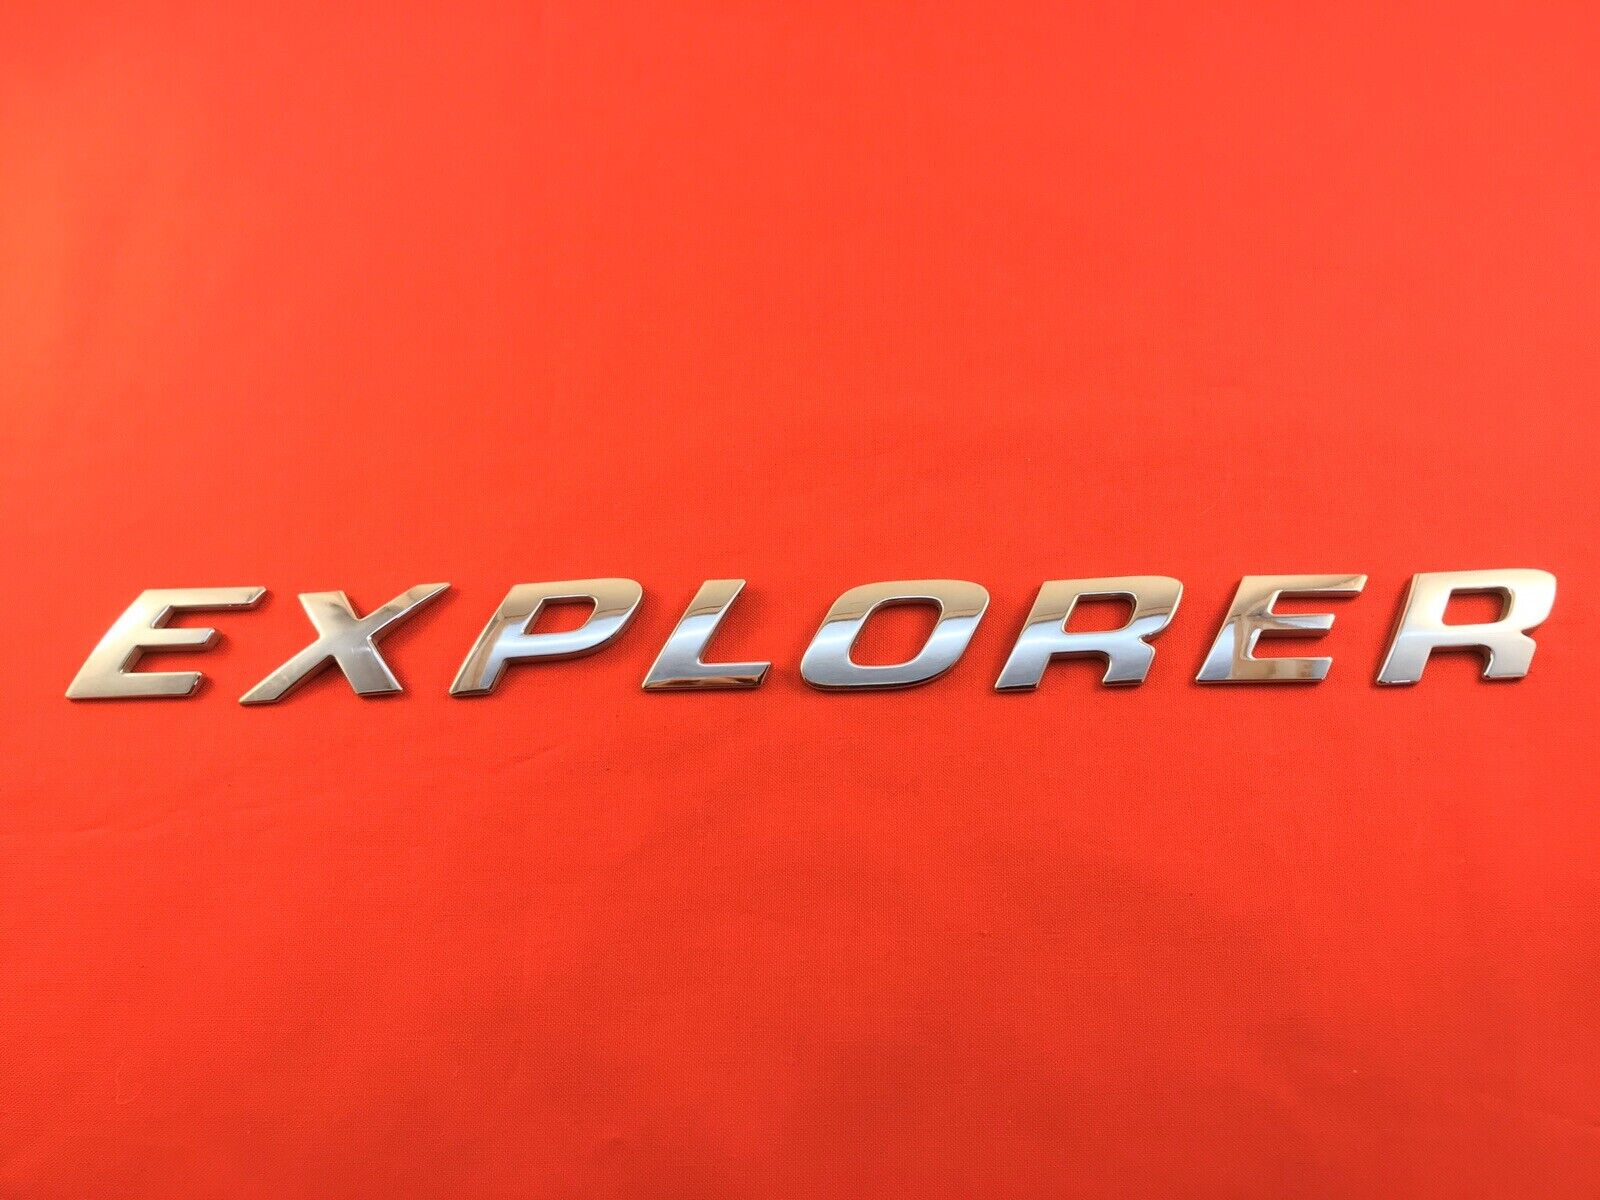 2002-2005 Ford Explorer Rear Trunk Emblem Logo Badge Chrome Sign Symbol Letters 